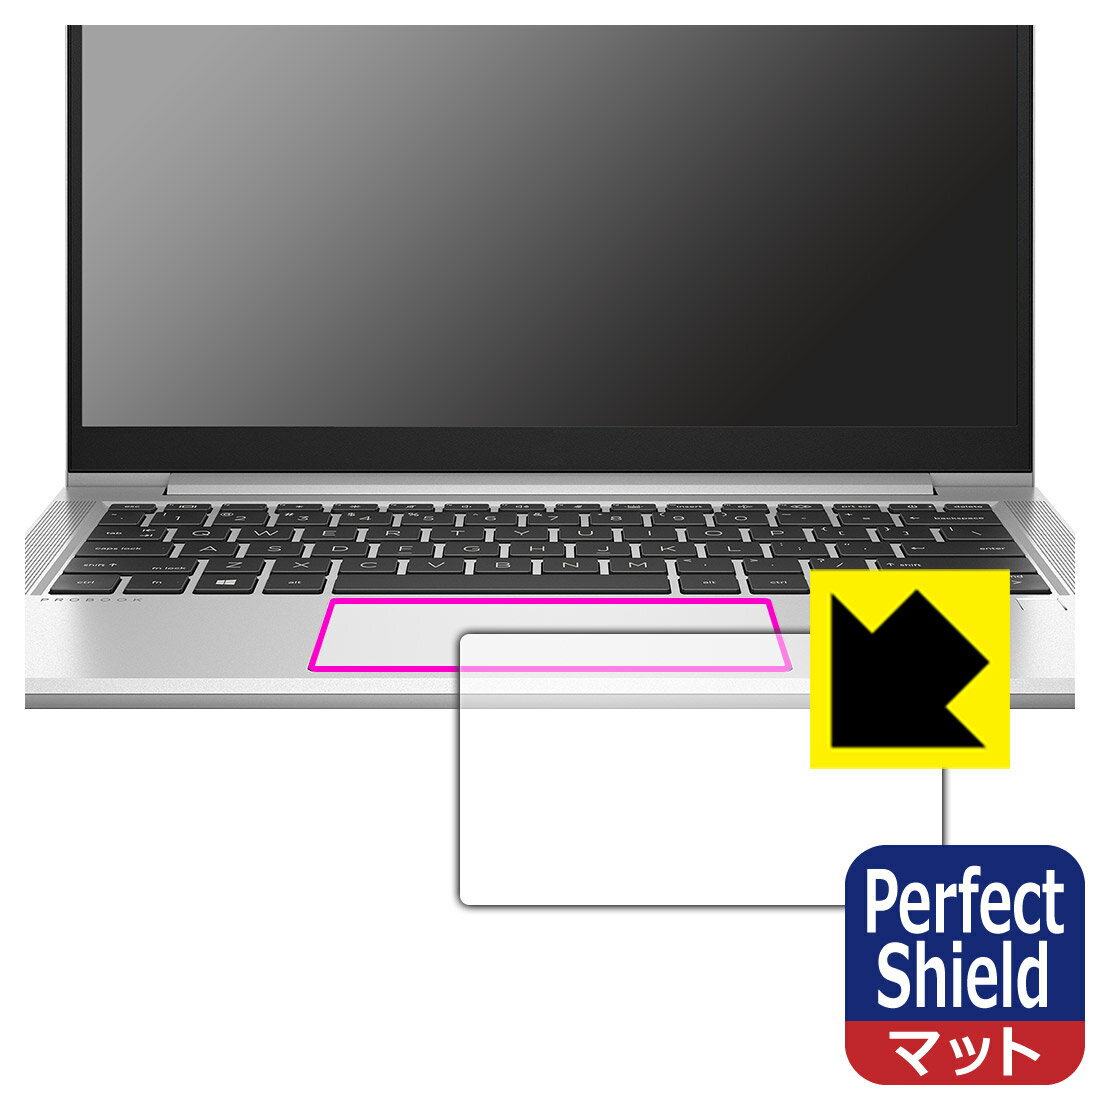 ●対応機種 : HP ProBook 430 G8専用の商品です。●製品内容 : クリックパッド用3枚●「Perfect Shield」は画面の反射を抑え、指のすべりもなめらかな指紋や皮脂汚れがつきにくい『アンチグレアタイプ(非光沢)の保護フィルム』●安心の国産素材を使用。日本国内の自社工場で製造し出荷しています。【ポスト投函送料無料】商品は【ポスト投函発送 (追跡可能メール便)】で発送します。お急ぎ、配達日時を指定されたい方は以下のクーポンを同時購入ください。【お急ぎ便クーポン】　プラス110円(税込)で速達扱いでの発送。お届けはポストへの投函となります。【配達日時指定クーポン】　プラス550円(税込)で配達日時を指定し、宅配便で発送させていただきます。【お急ぎ便クーポン】はこちらをクリック【配達日時指定クーポン】はこちらをクリック 　 表面に微細な凹凸を作ることにより、外光を乱反射させギラツキを抑える「アンチグレア加工」がされております。 屋外での太陽光の映り込み、屋内でも蛍光灯などの映り込みが気になるシーンが多い方におすすめです。 また、指紋がついた場合でも目立ちにくいという特長があります。 指滑りはさらさらな使用感でストレスのない操作・入力が可能です。 ハードコート加工がされており、キズや擦れに強くなっています。簡単にキズがつかず長くご利用いただけます。 反射防止のアンチグレア加工で指紋が目立ちにくい上、表面は防汚コーティングがされており、皮脂や汚れがつきにくく、また、落ちやすくなっています。 接着面は気泡の入りにくい特殊な自己吸着タイプです。素材に柔軟性があり、貼り付け作業も簡単にできます。また、はがすときにガラス製フィルムのように割れてしまうことはありません。 貼り直しが何度でもできるので、正しい位置へ貼り付けられるまでやり直すことができます。 最高級グレードの国産素材を日本国内の弊社工場で加工している完全な Made in Japan です。安心の品質をお届けします。 使用上の注意 ●本製品は機器の画面をキズなどから保護するフィルムです。他の目的にはご使用にならないでください。 ●本製品は液晶保護および機器本体を完全に保護することを保証するものではありません。機器の破損、損傷、故障、その他損害につきましては一切の責任を負いかねます。 ●製品の性質上、画面操作の反応が変化したり、表示等が変化して見える場合がございます。 ●貼り付け作業時の失敗(位置ズレ、汚れ、ゆがみ、折れ、気泡など)および取り外し作業時の破損、損傷などについては、一切の責任を負いかねます。 ●水に濡れた状態でのご使用は吸着力の低下などにより、保護フィルムがはがれてしまう場合がございます。防水対応の機器でご使用の場合はご注意ください。 ●アルコール類やその他薬剤を本製品に付着させないでください。表面のコーティングや吸着面が変質するおそれがあります。 ●品質向上のため、仕様などを予告なく変更する場合がございますので、予めご了承ください。